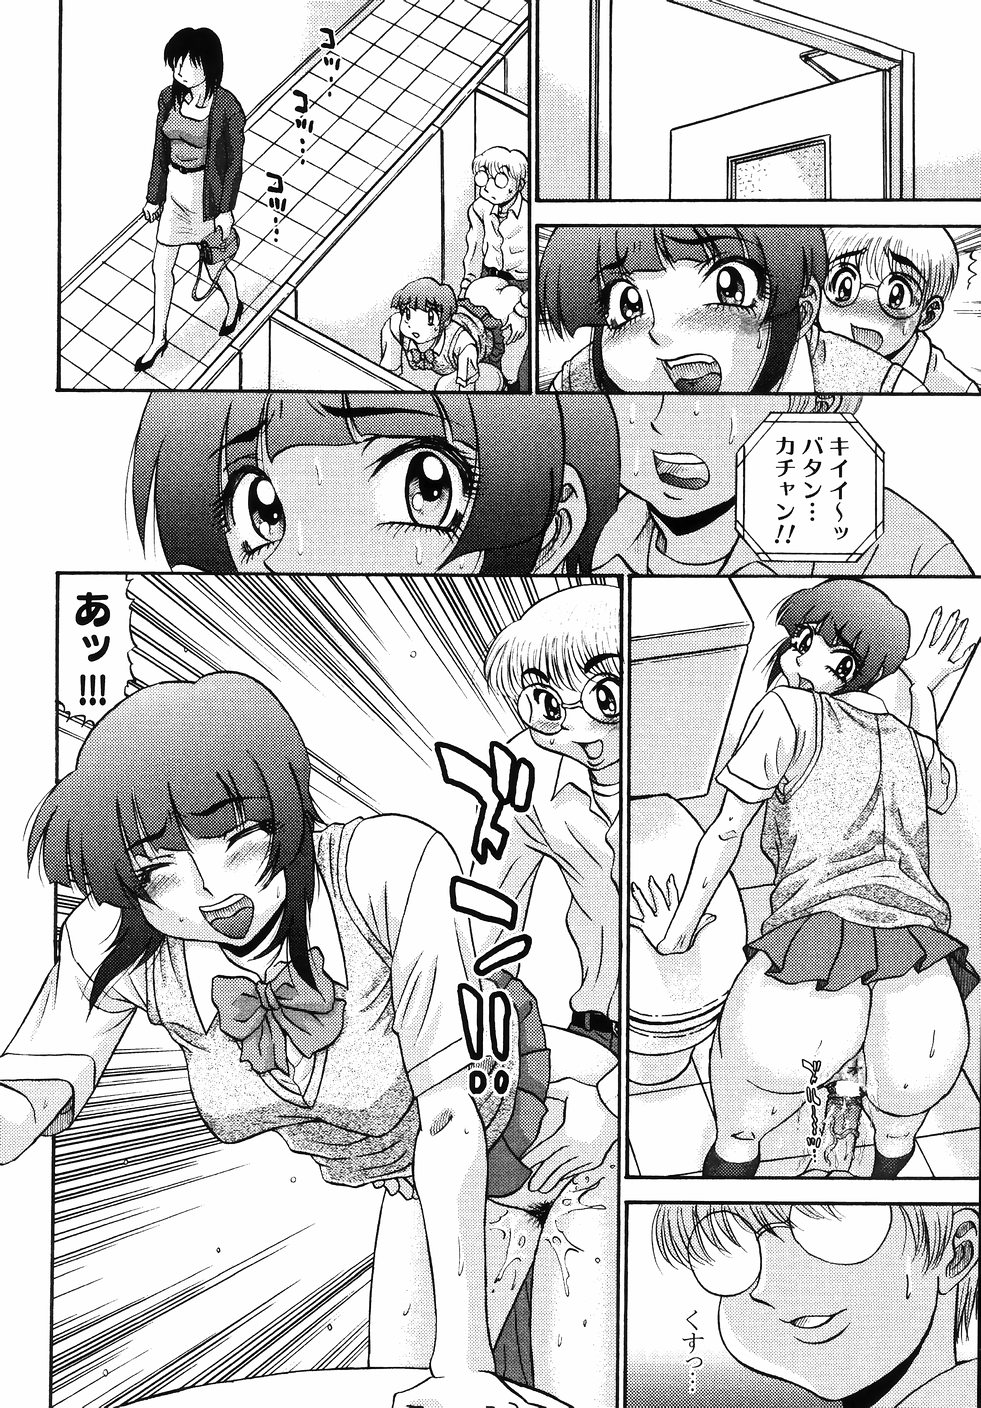 [PJ-1] Nozomi 2 page 14 full